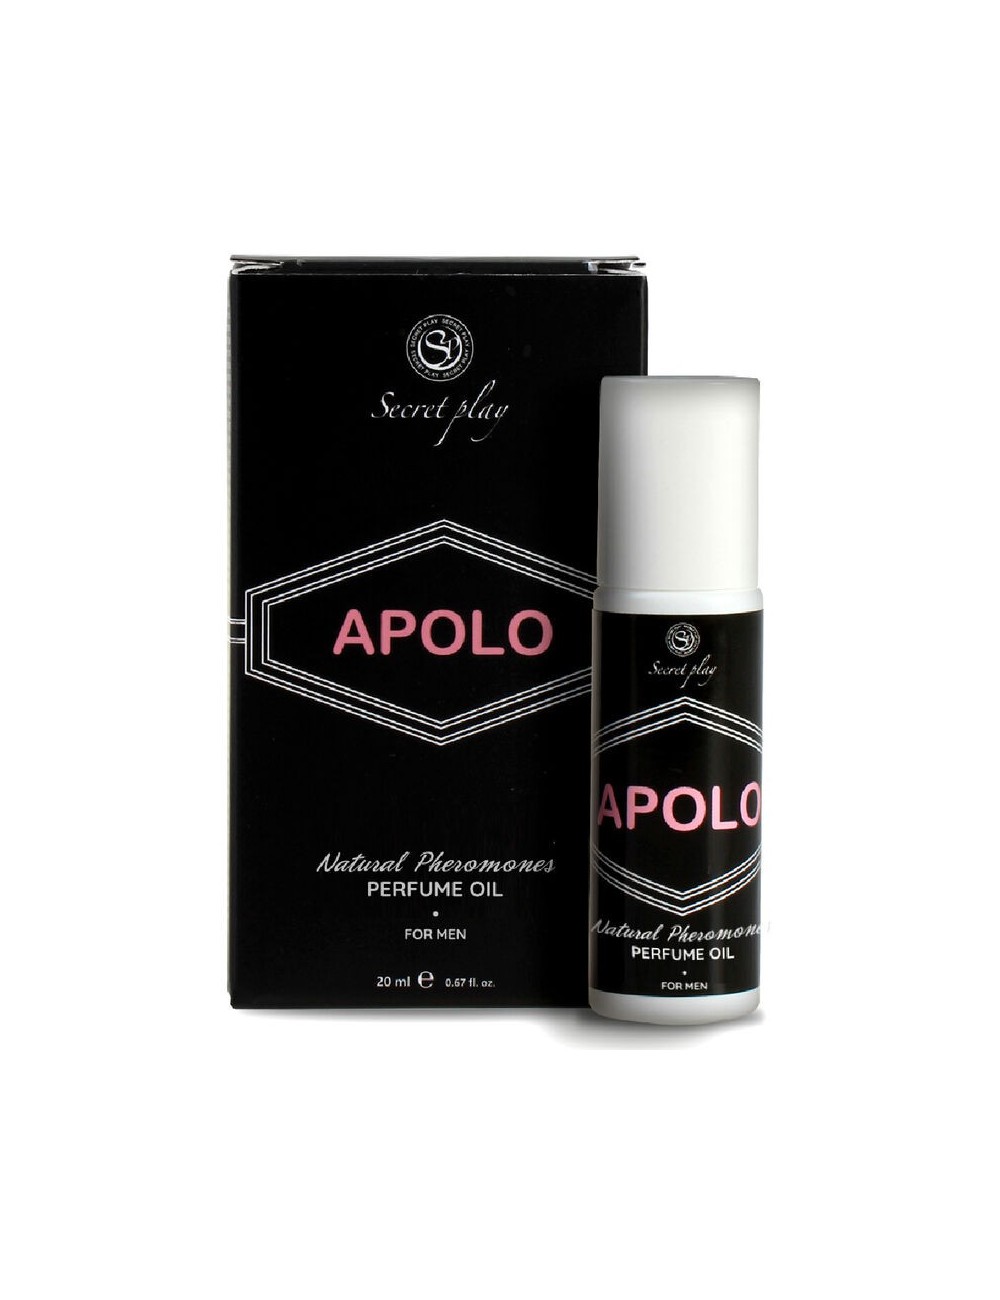 SECRETPLAY PARFUM Ã L'HUILE APOLO 20ML - Aphrodisiaques - Secretplay Cosmetic